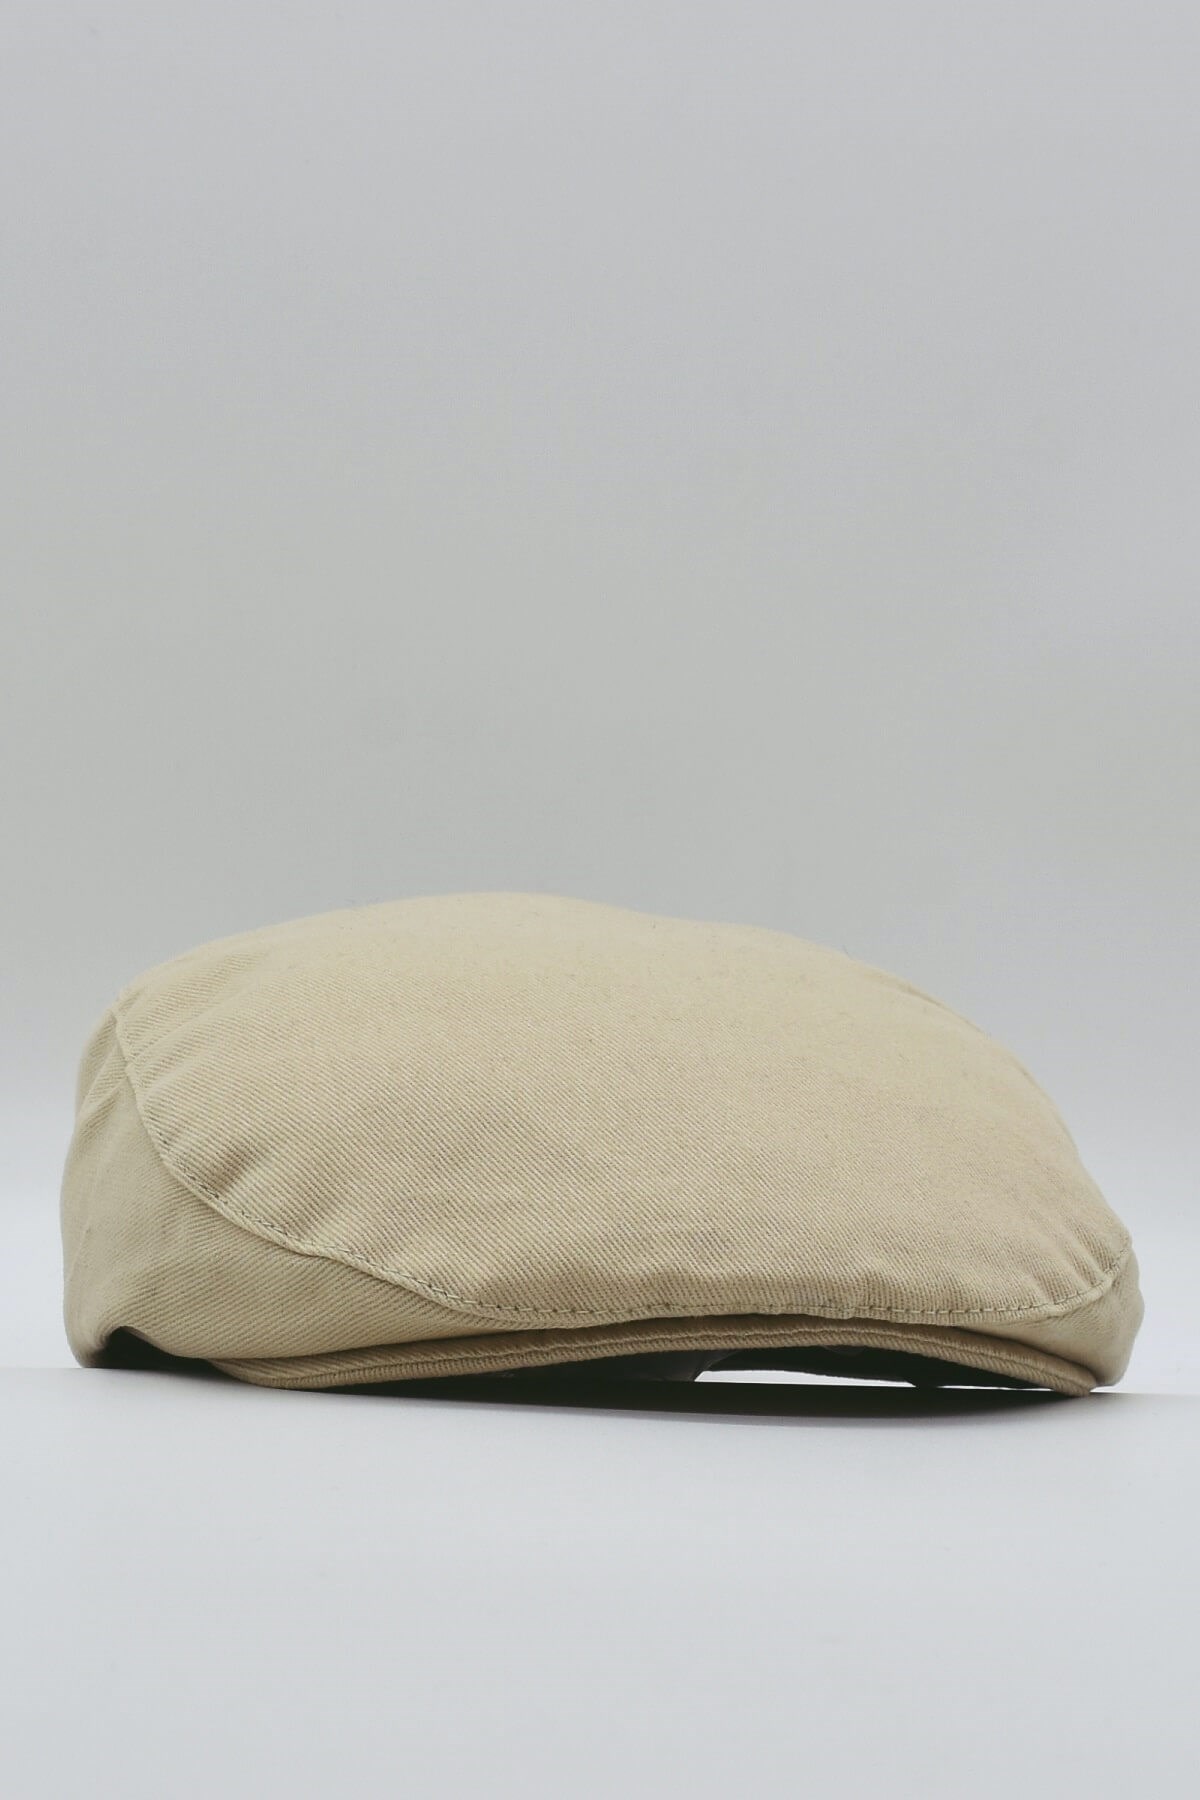 Külah Erkek Yazlık %100 Cotton Kasket Şapka Flat Cap KLH0538